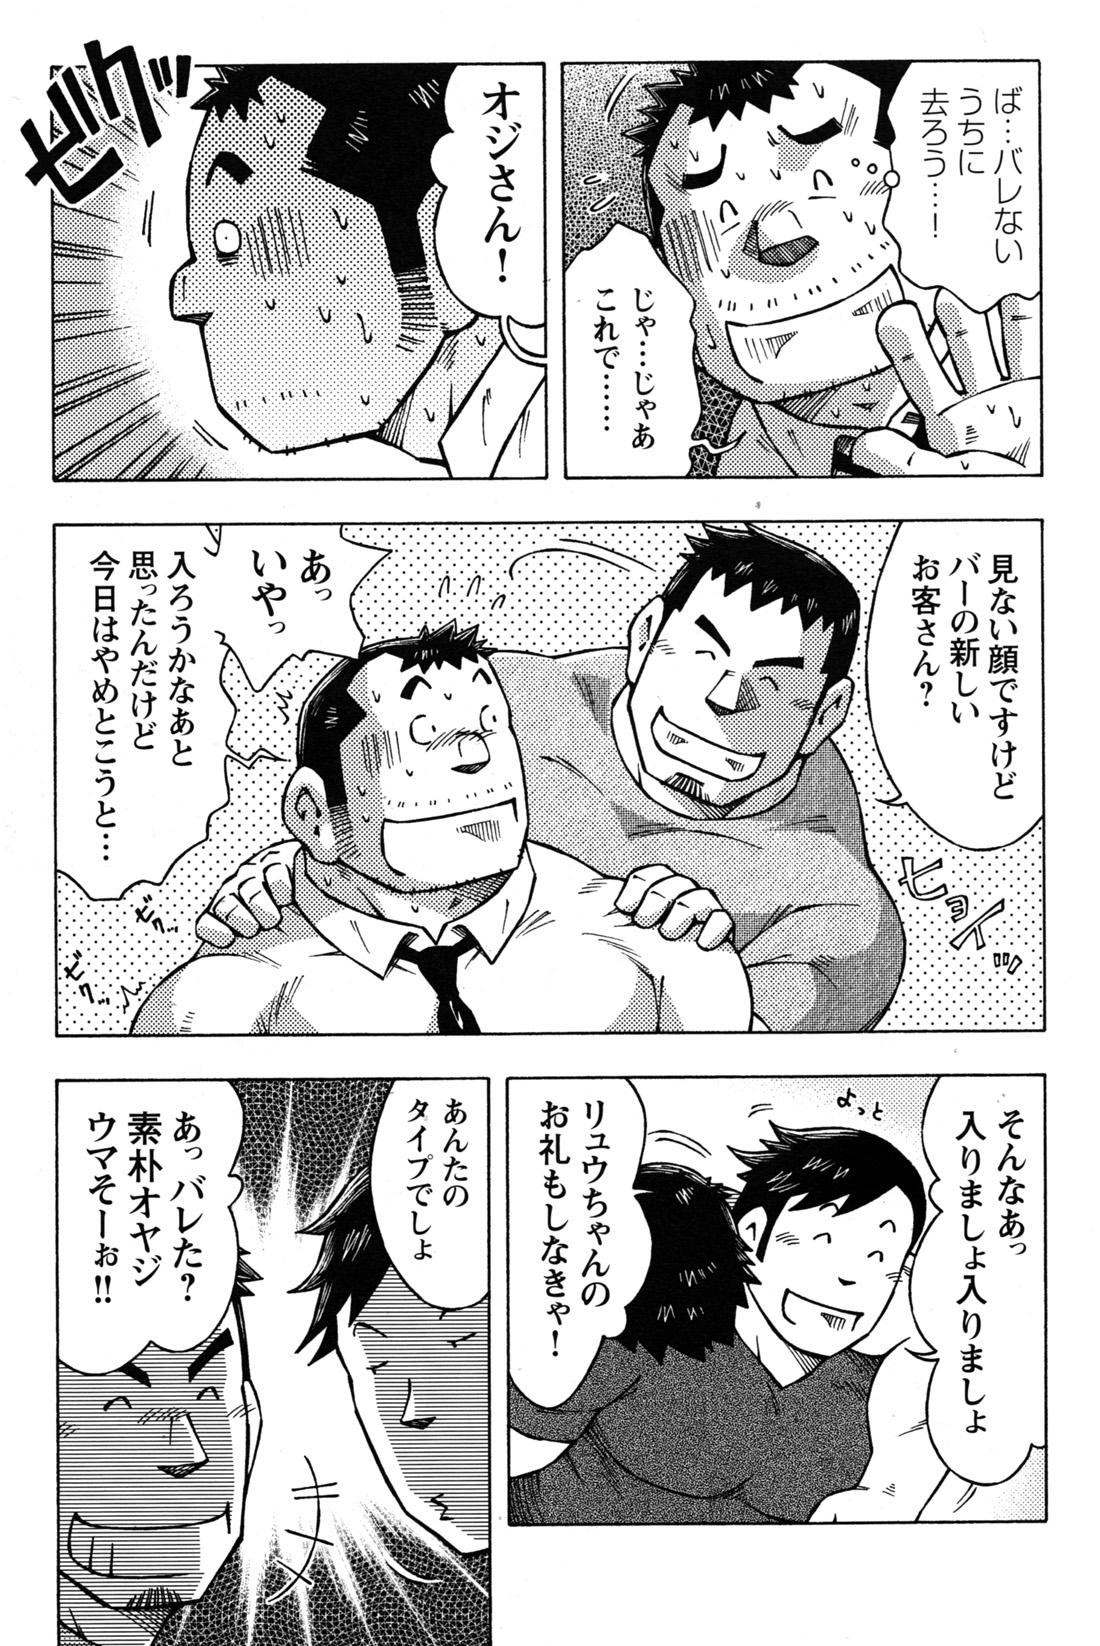 Comic G-men Gaho No.09 Gacchibi Zeme 128